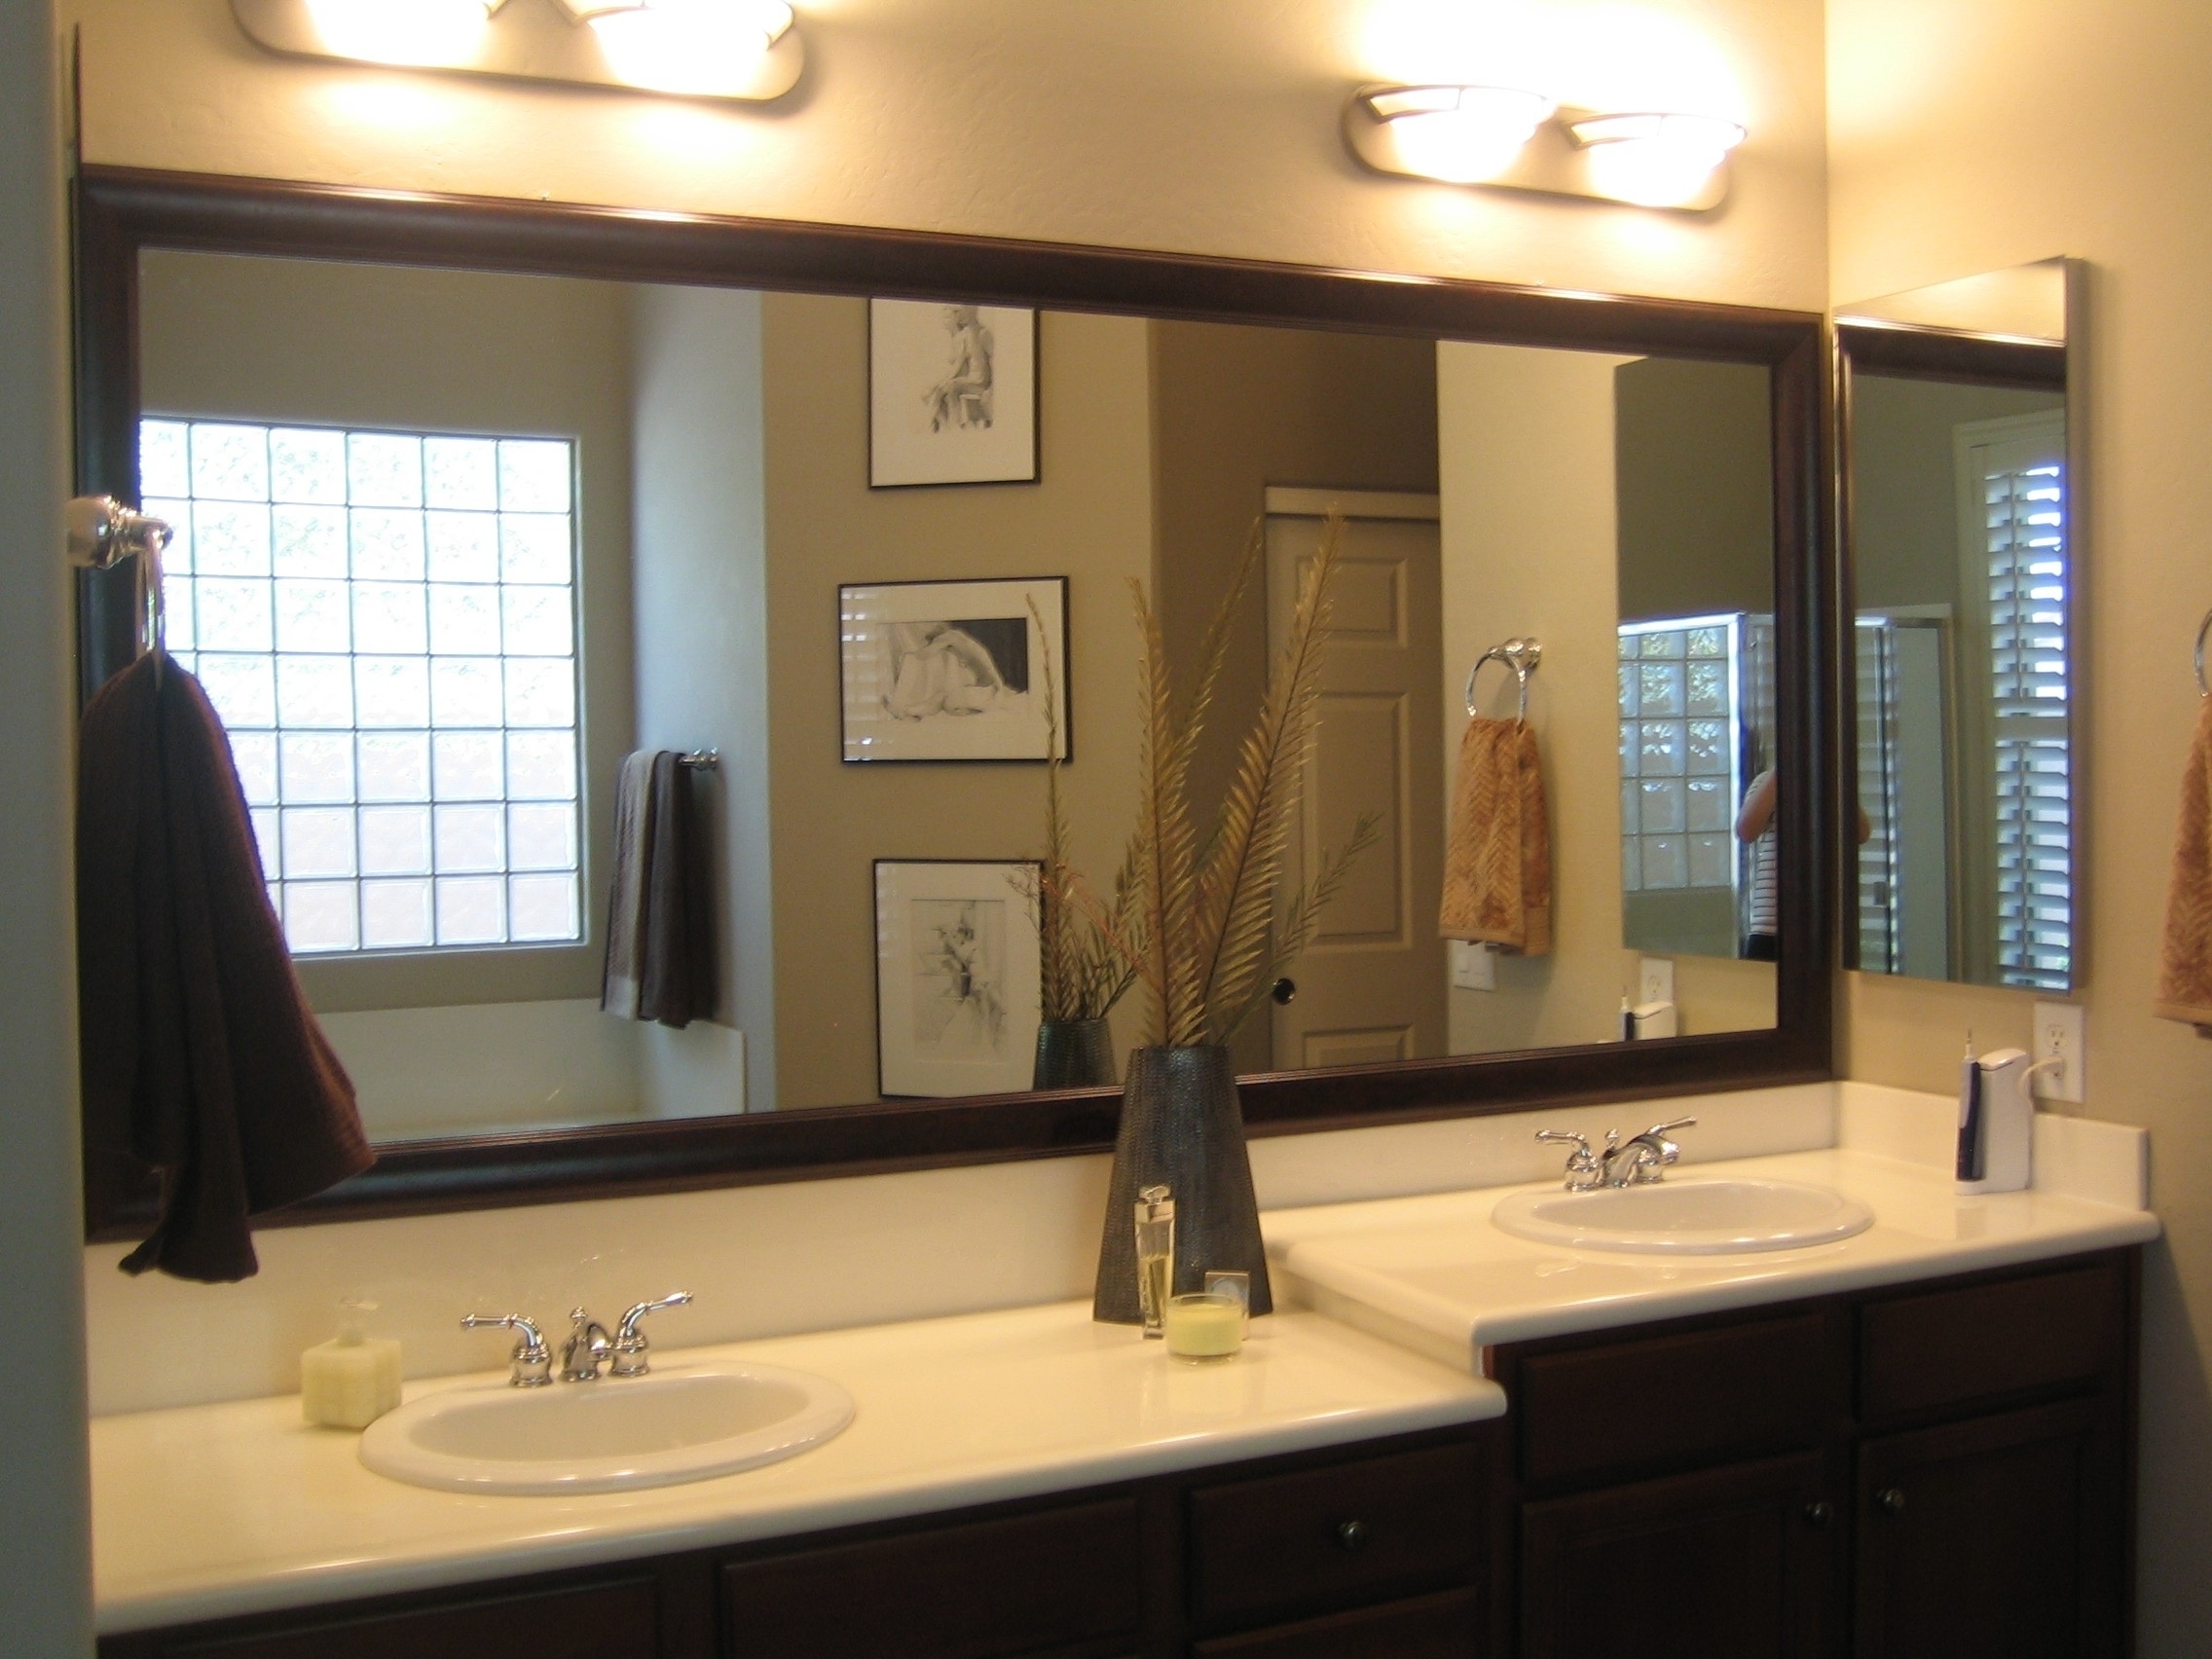 Bathroom Mirror Over Vanity Woodworkers Shop Made